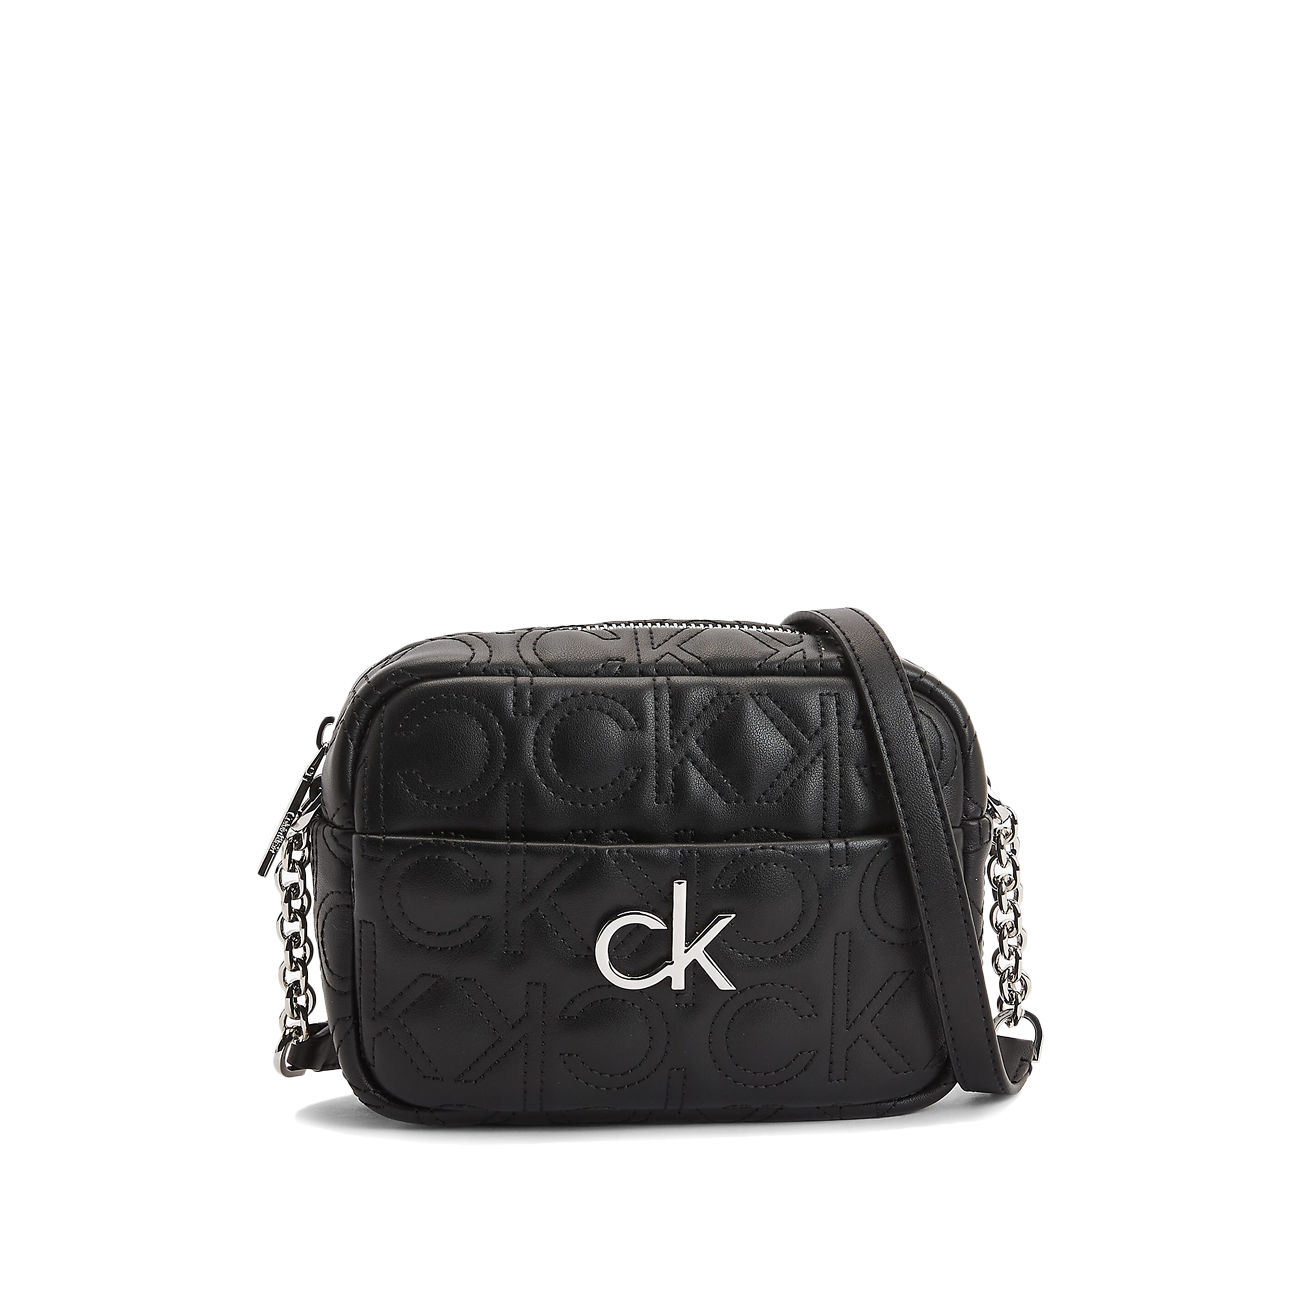 Calvin Klein, Bags, Calvin Klein Beige And White Purse